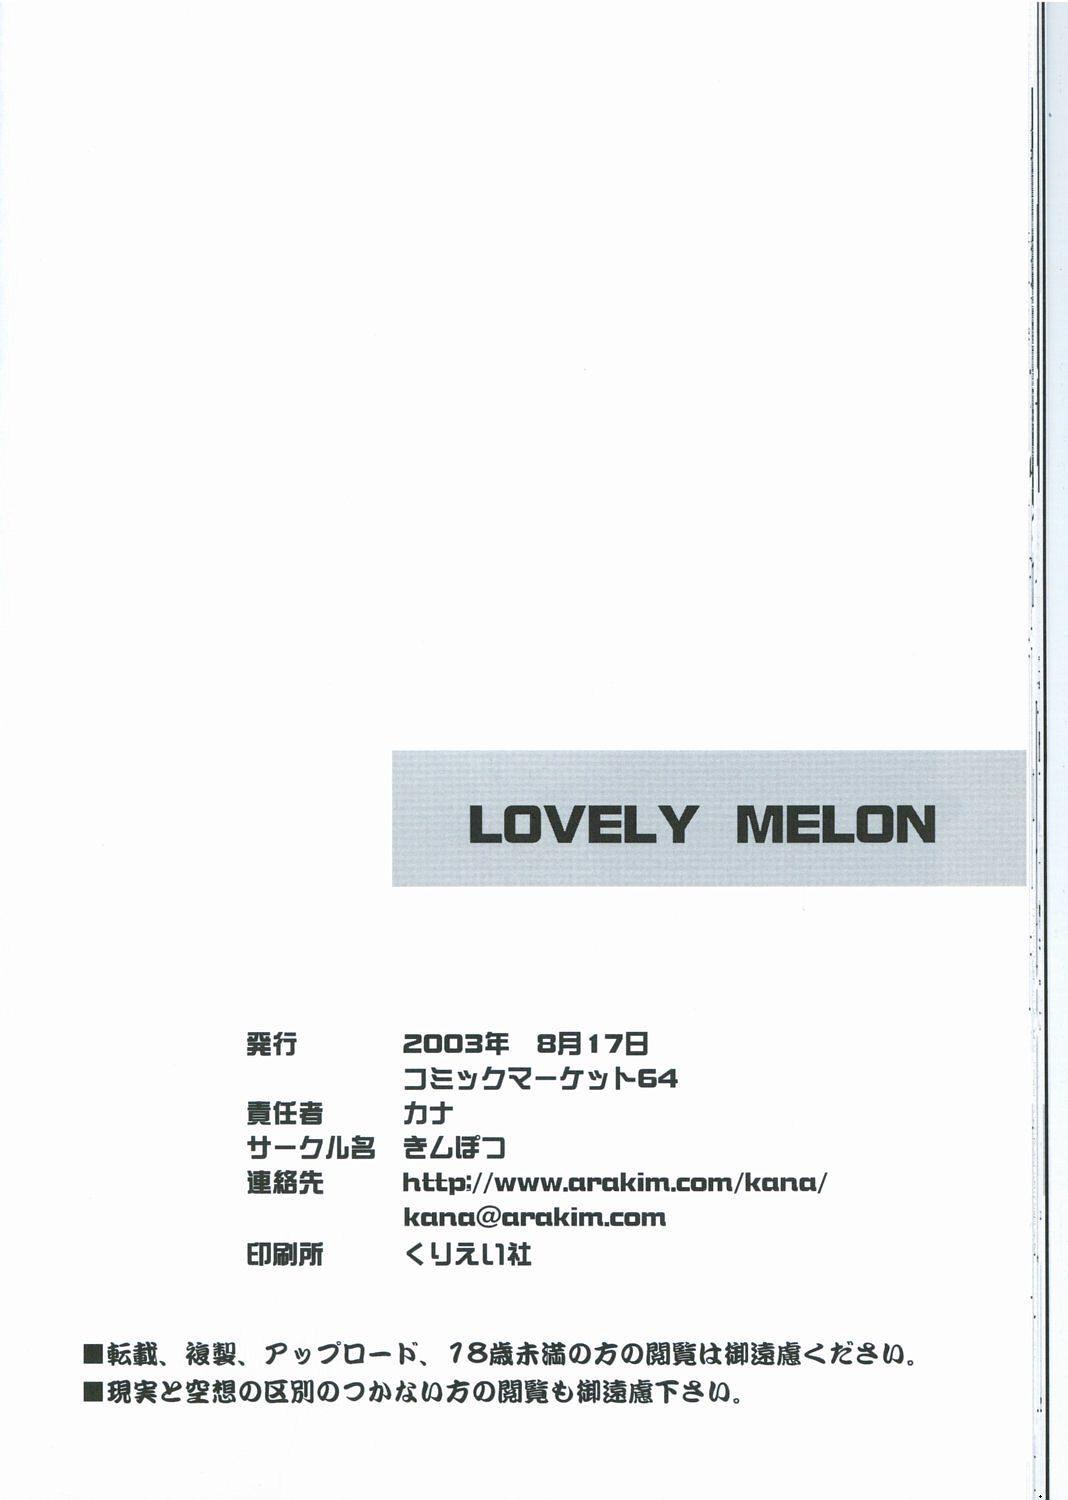 LOVELY MELON 24